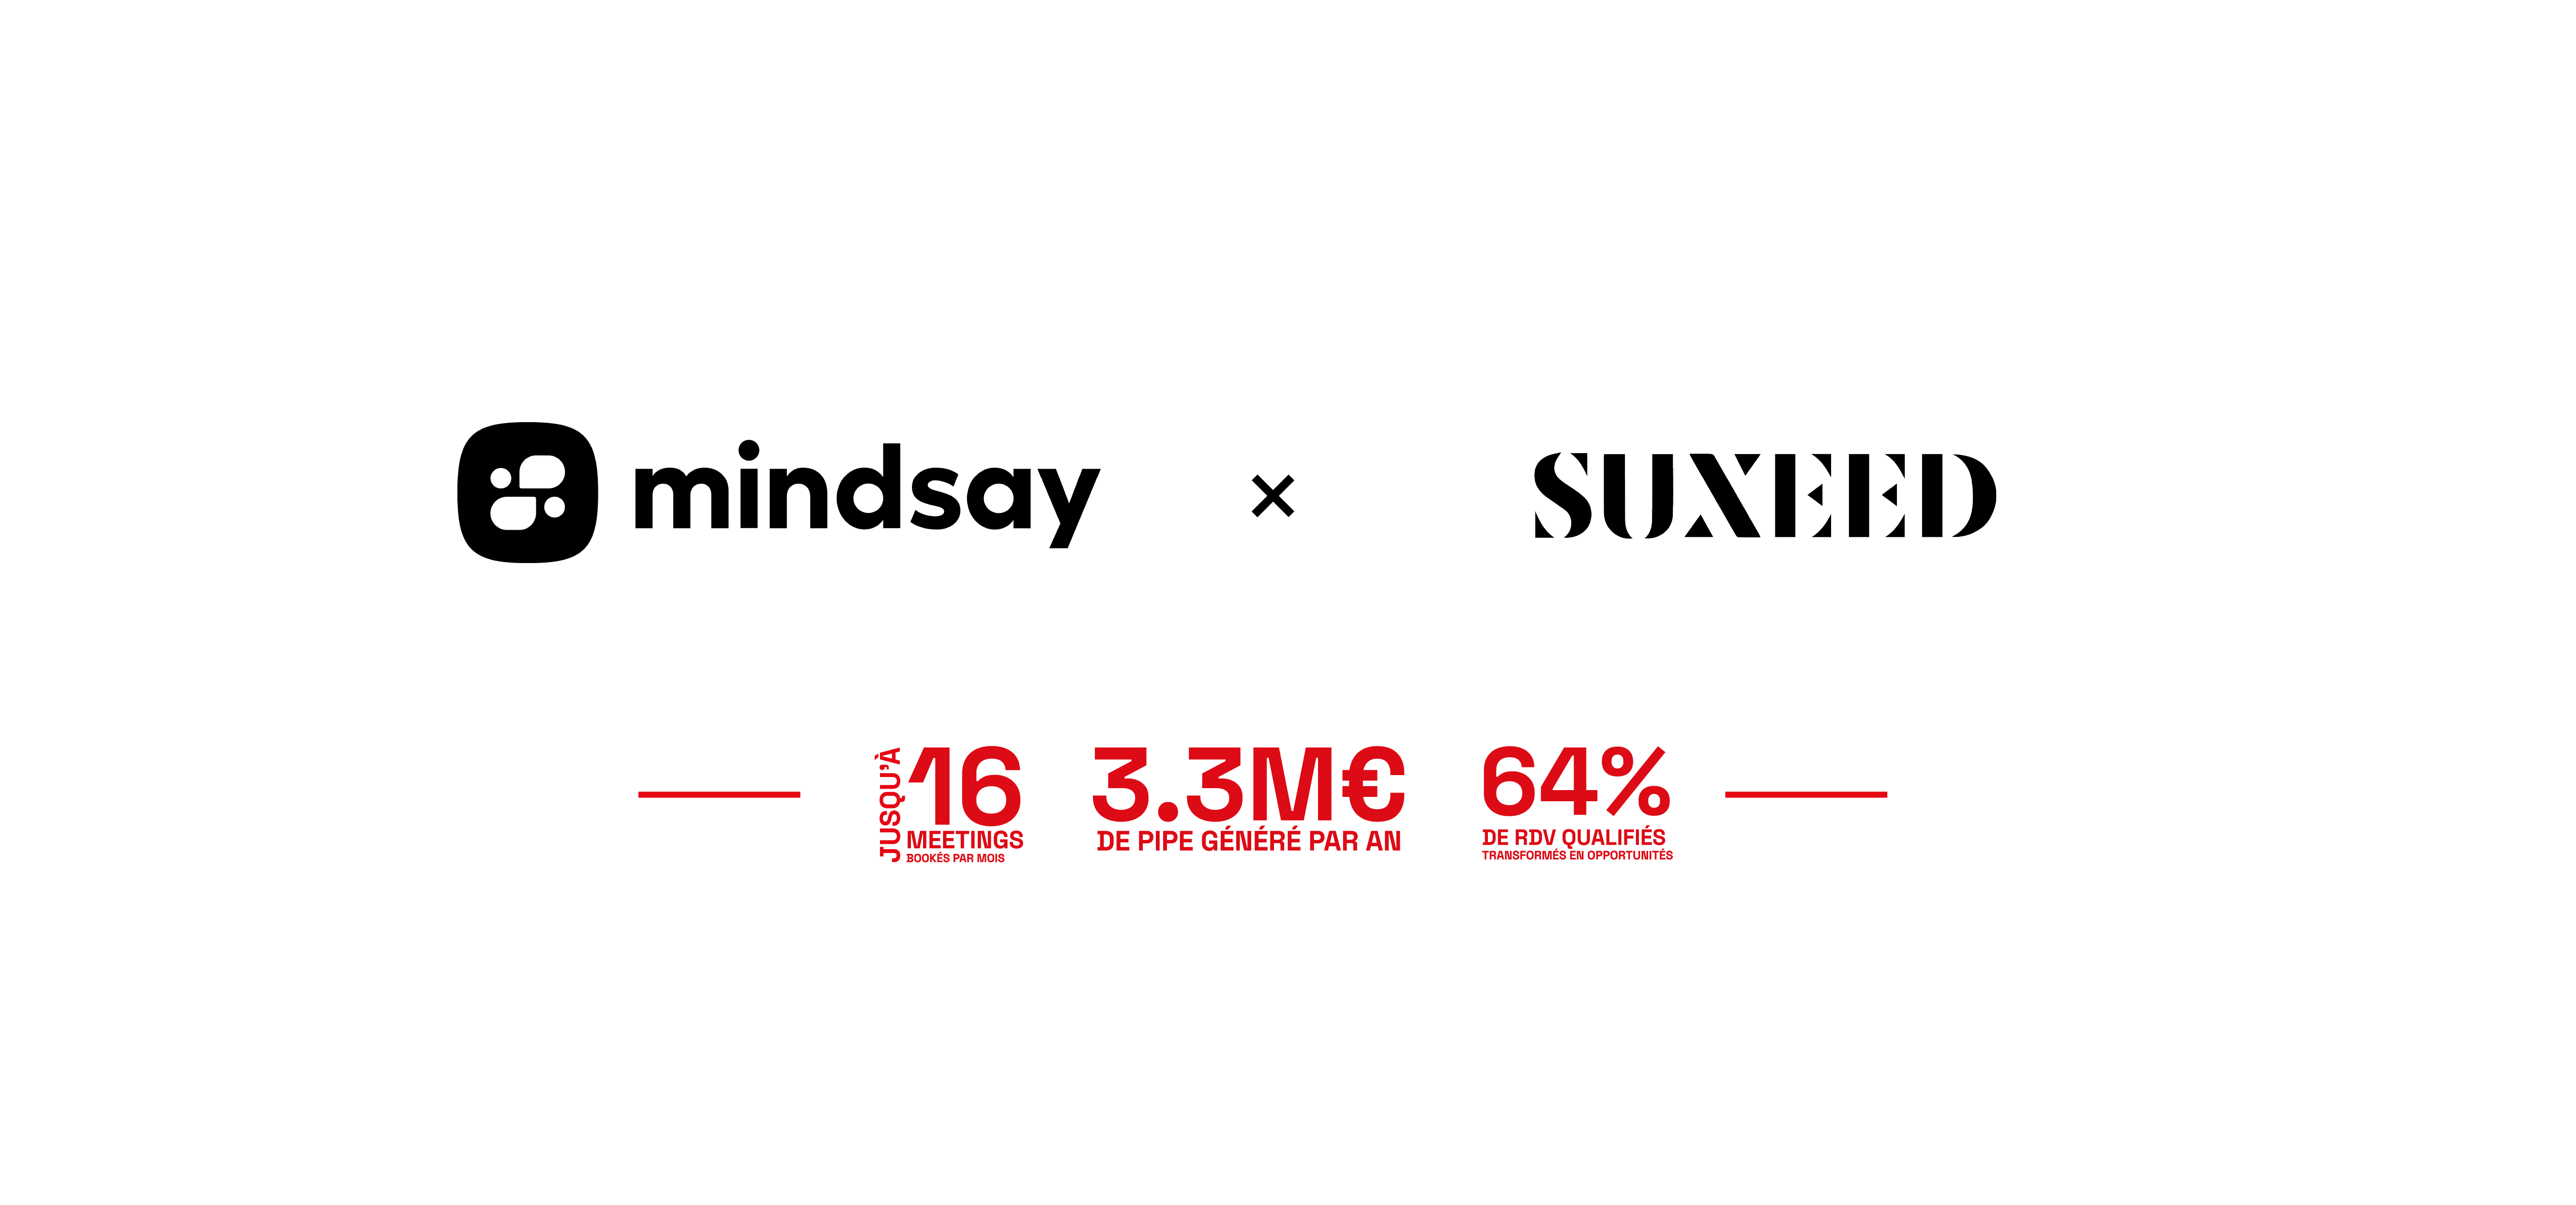 Mindsay relance ses ventes après le Covid grâce à la prospection commerciale